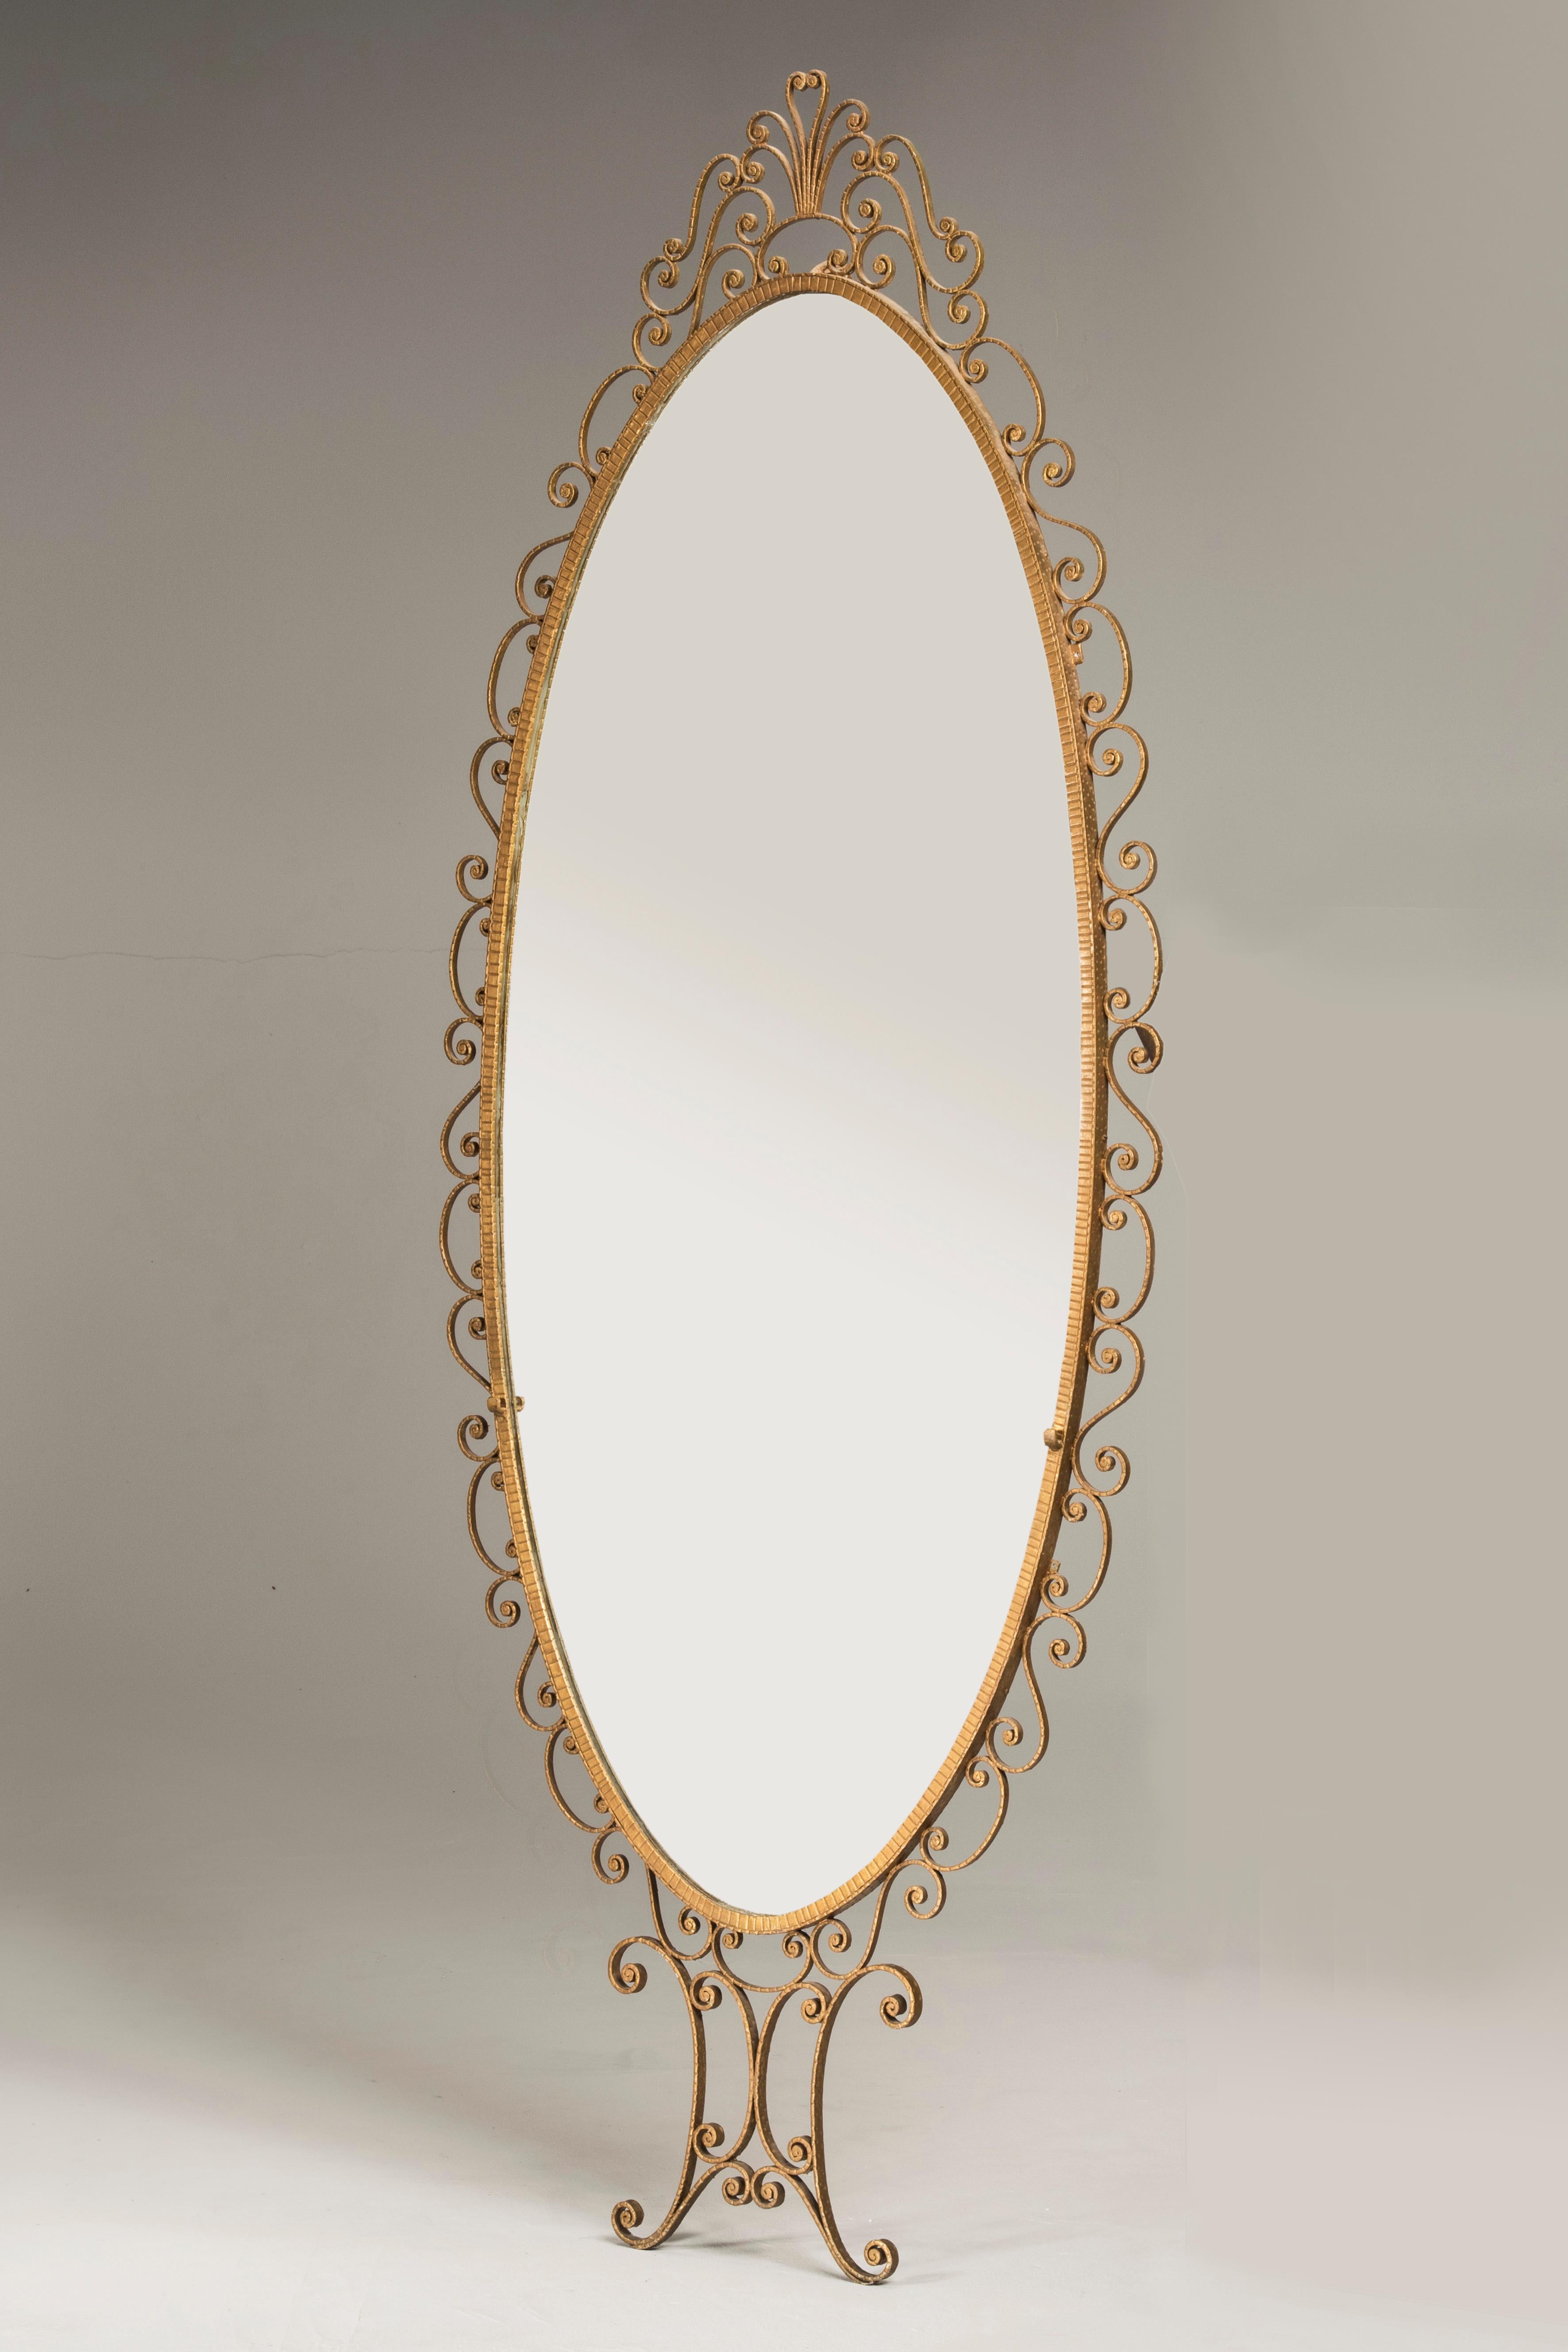 Miroir ovale en fer forgé doré Luigi Colli, italien, milieu du siècle dernier

Miroir ovale avec cadre en fer forgé doré, par le designer italien Pier Luigi Colli, Italie, années 1950. Ce designer était célèbre pour sa capacité particulière à